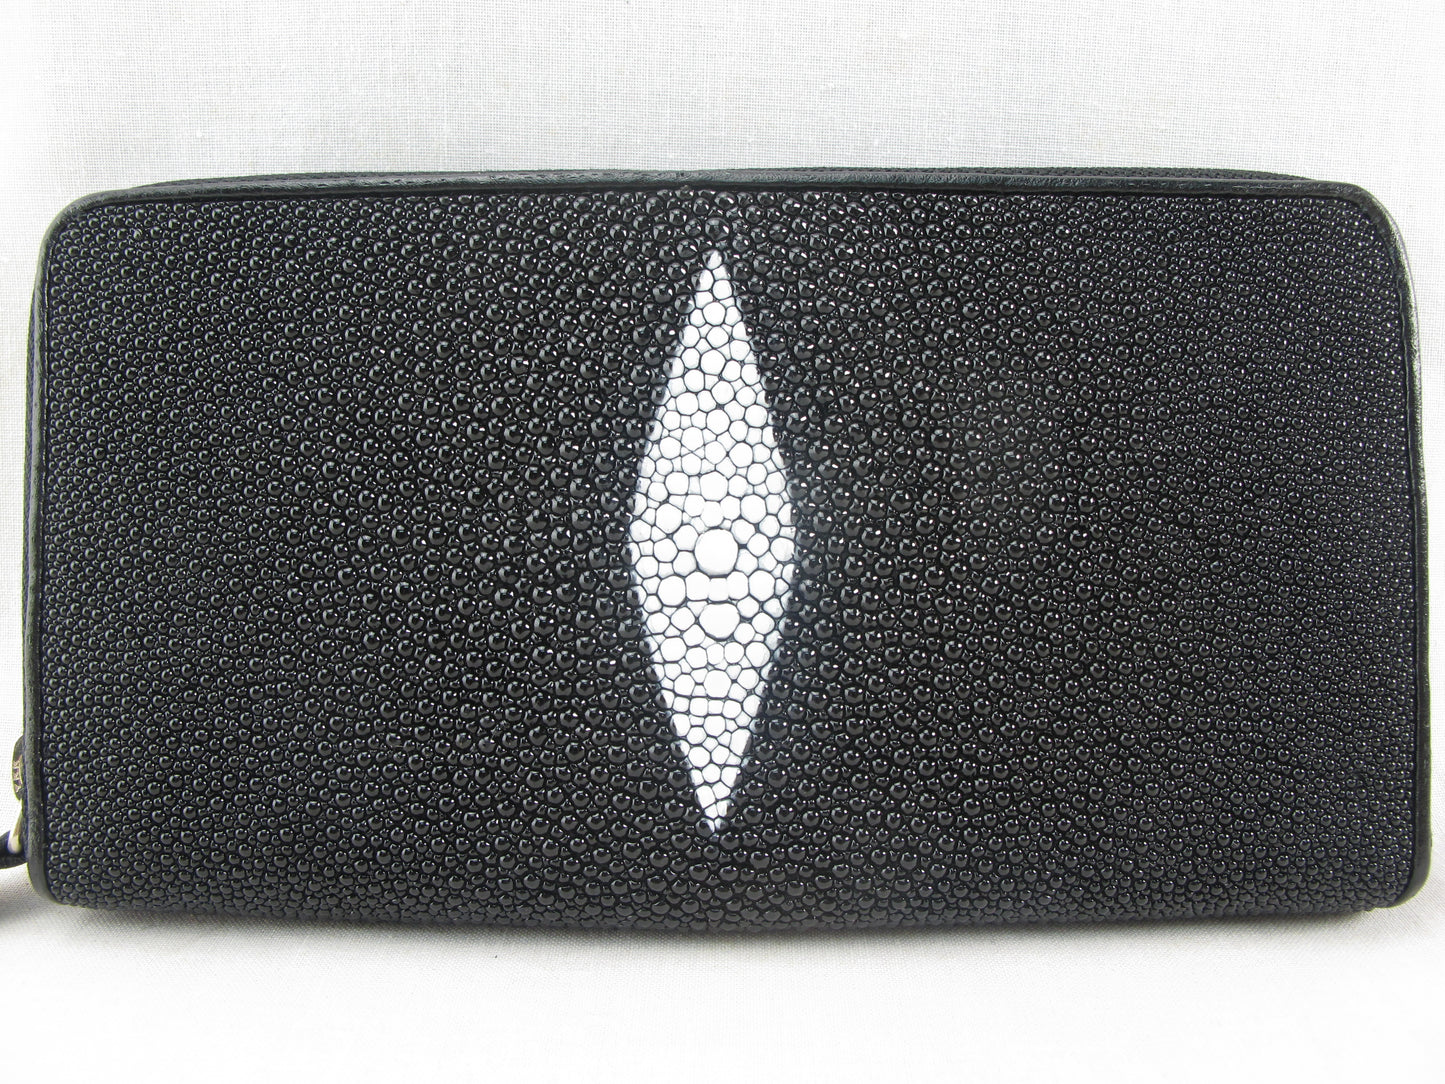 Genuine Stingray Skin Leather Zip Around Clutch Wallet Purse